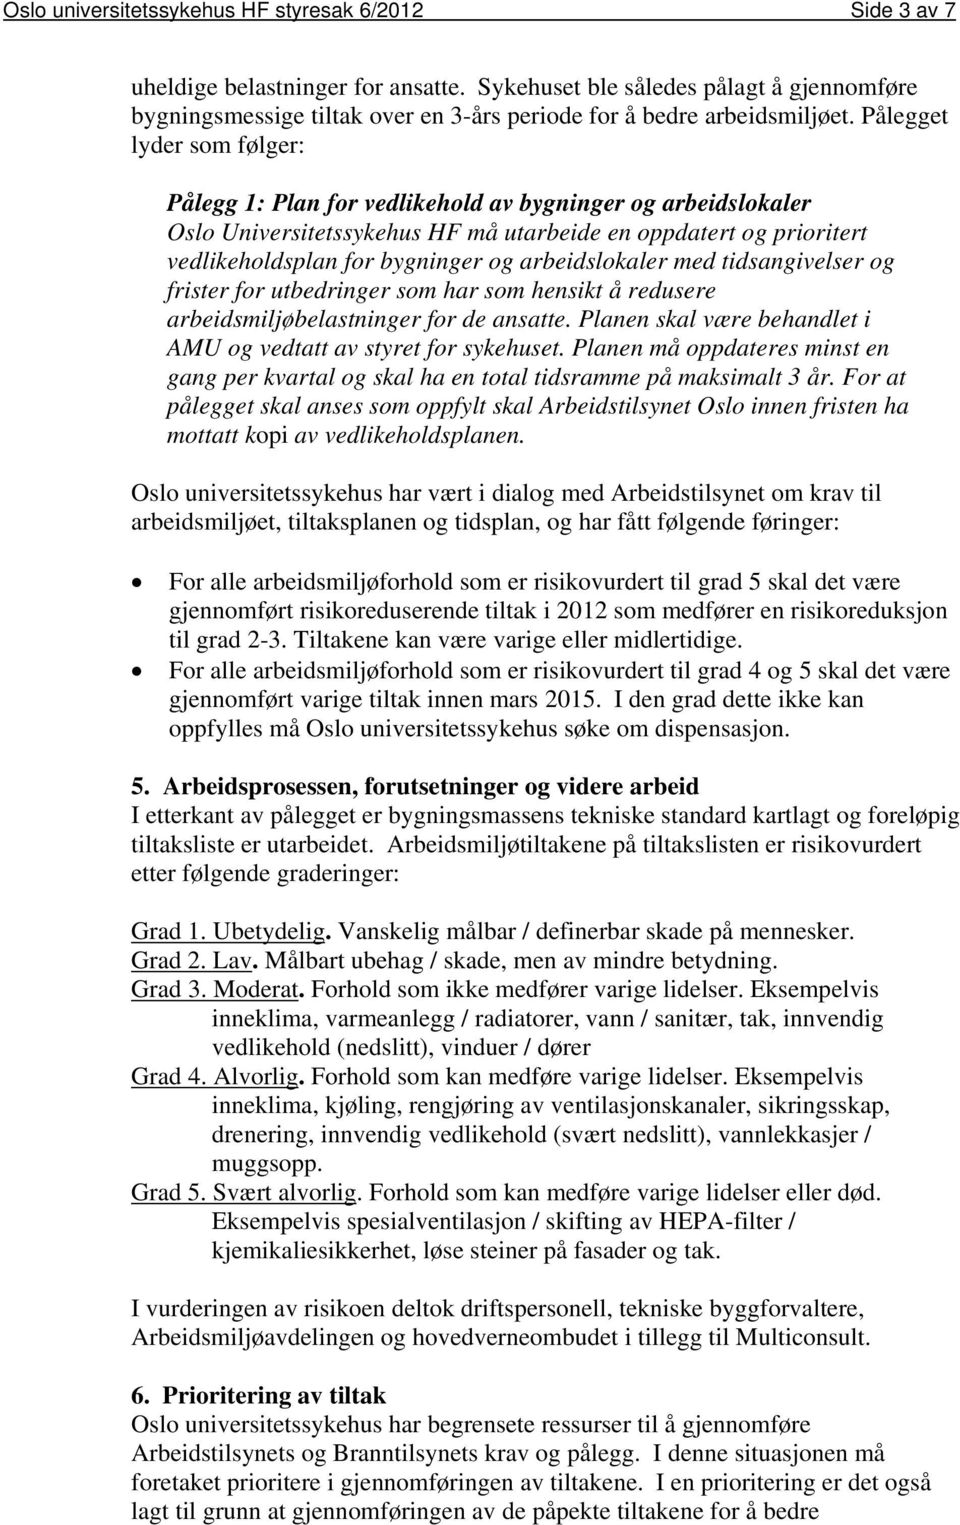 Pålegget lyder som følger: Pålegg 1: Plan for vedlikehold av bygninger og arbeidslokaler Oslo Universitetssykehus HF må utarbeide en oppdatert og prioritert vedlikeholdsplan for bygninger og